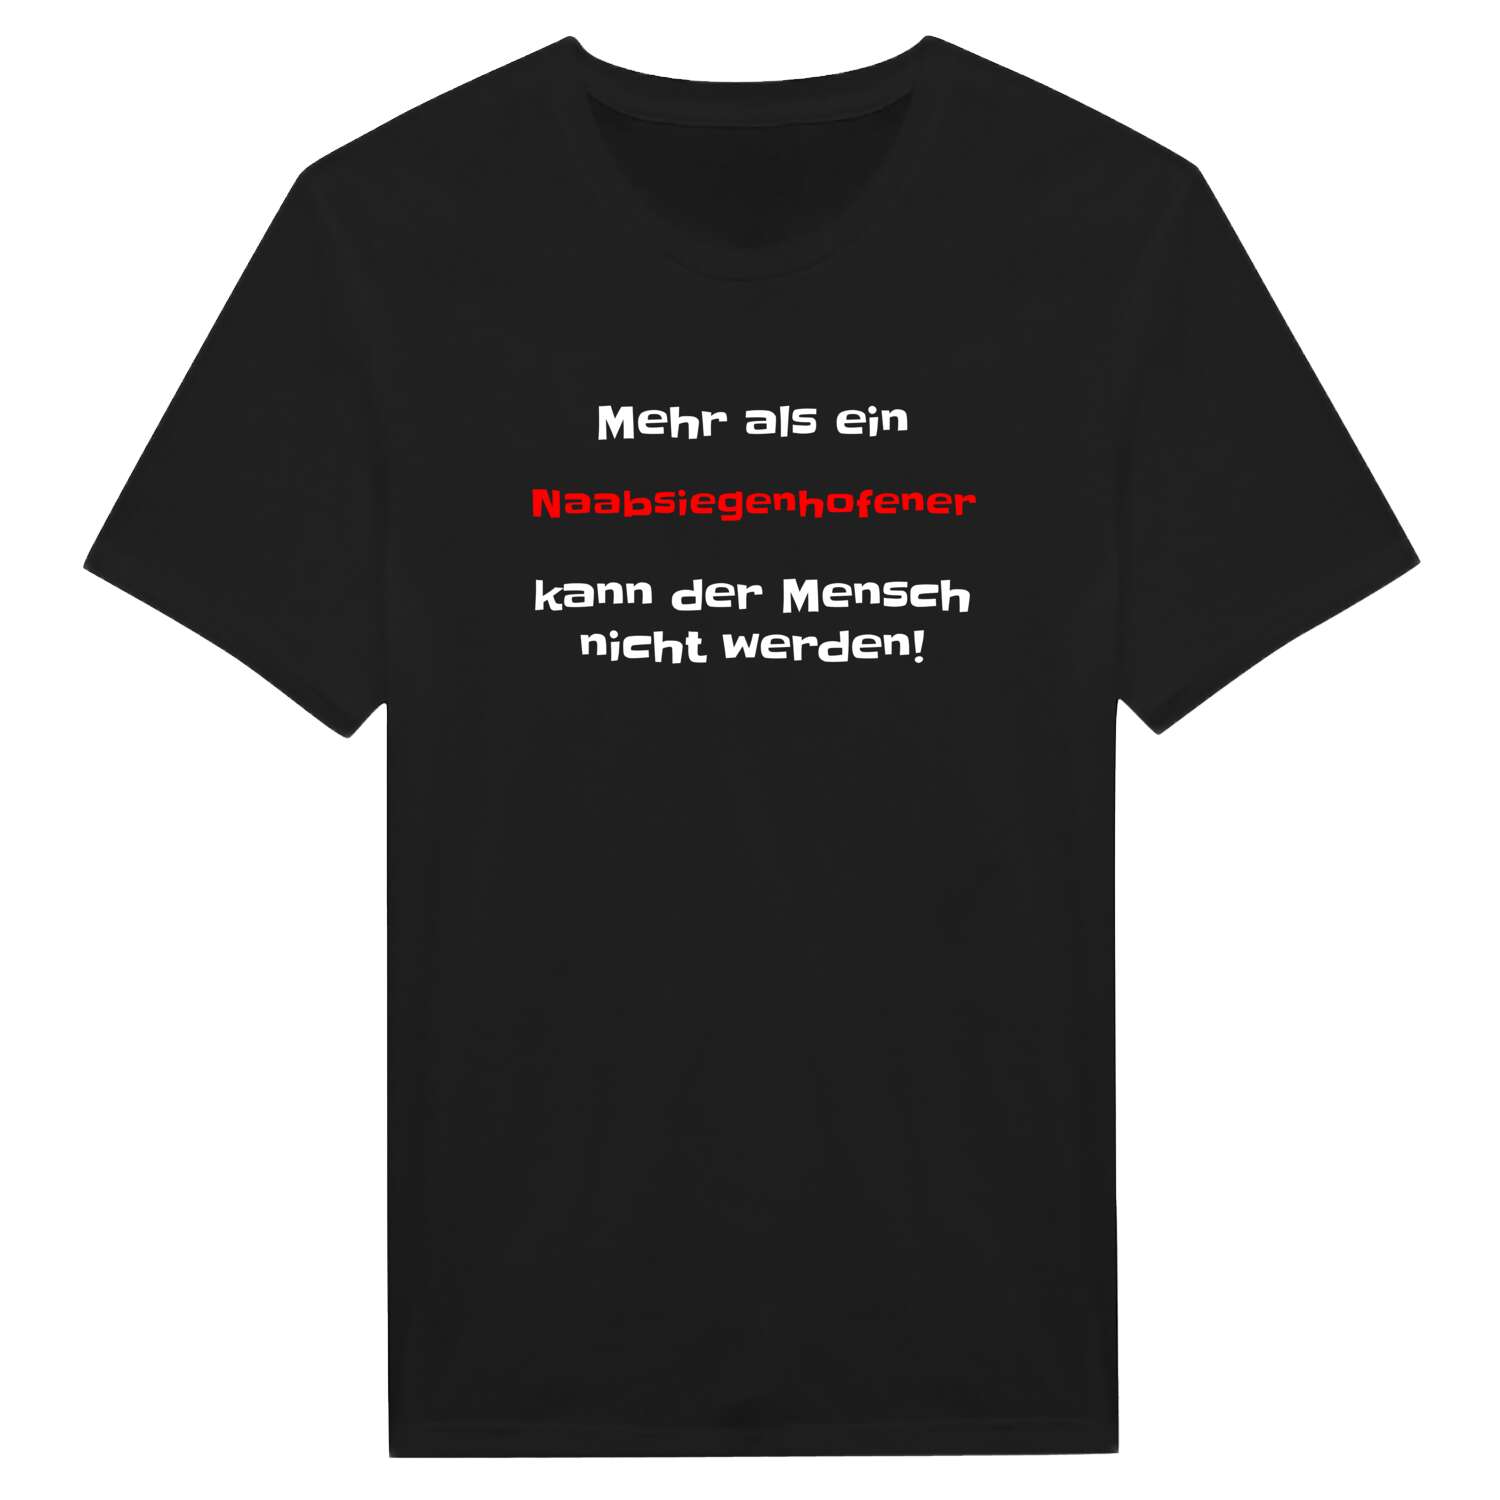 Naabsiegenhofen T-Shirt »Mehr als ein«